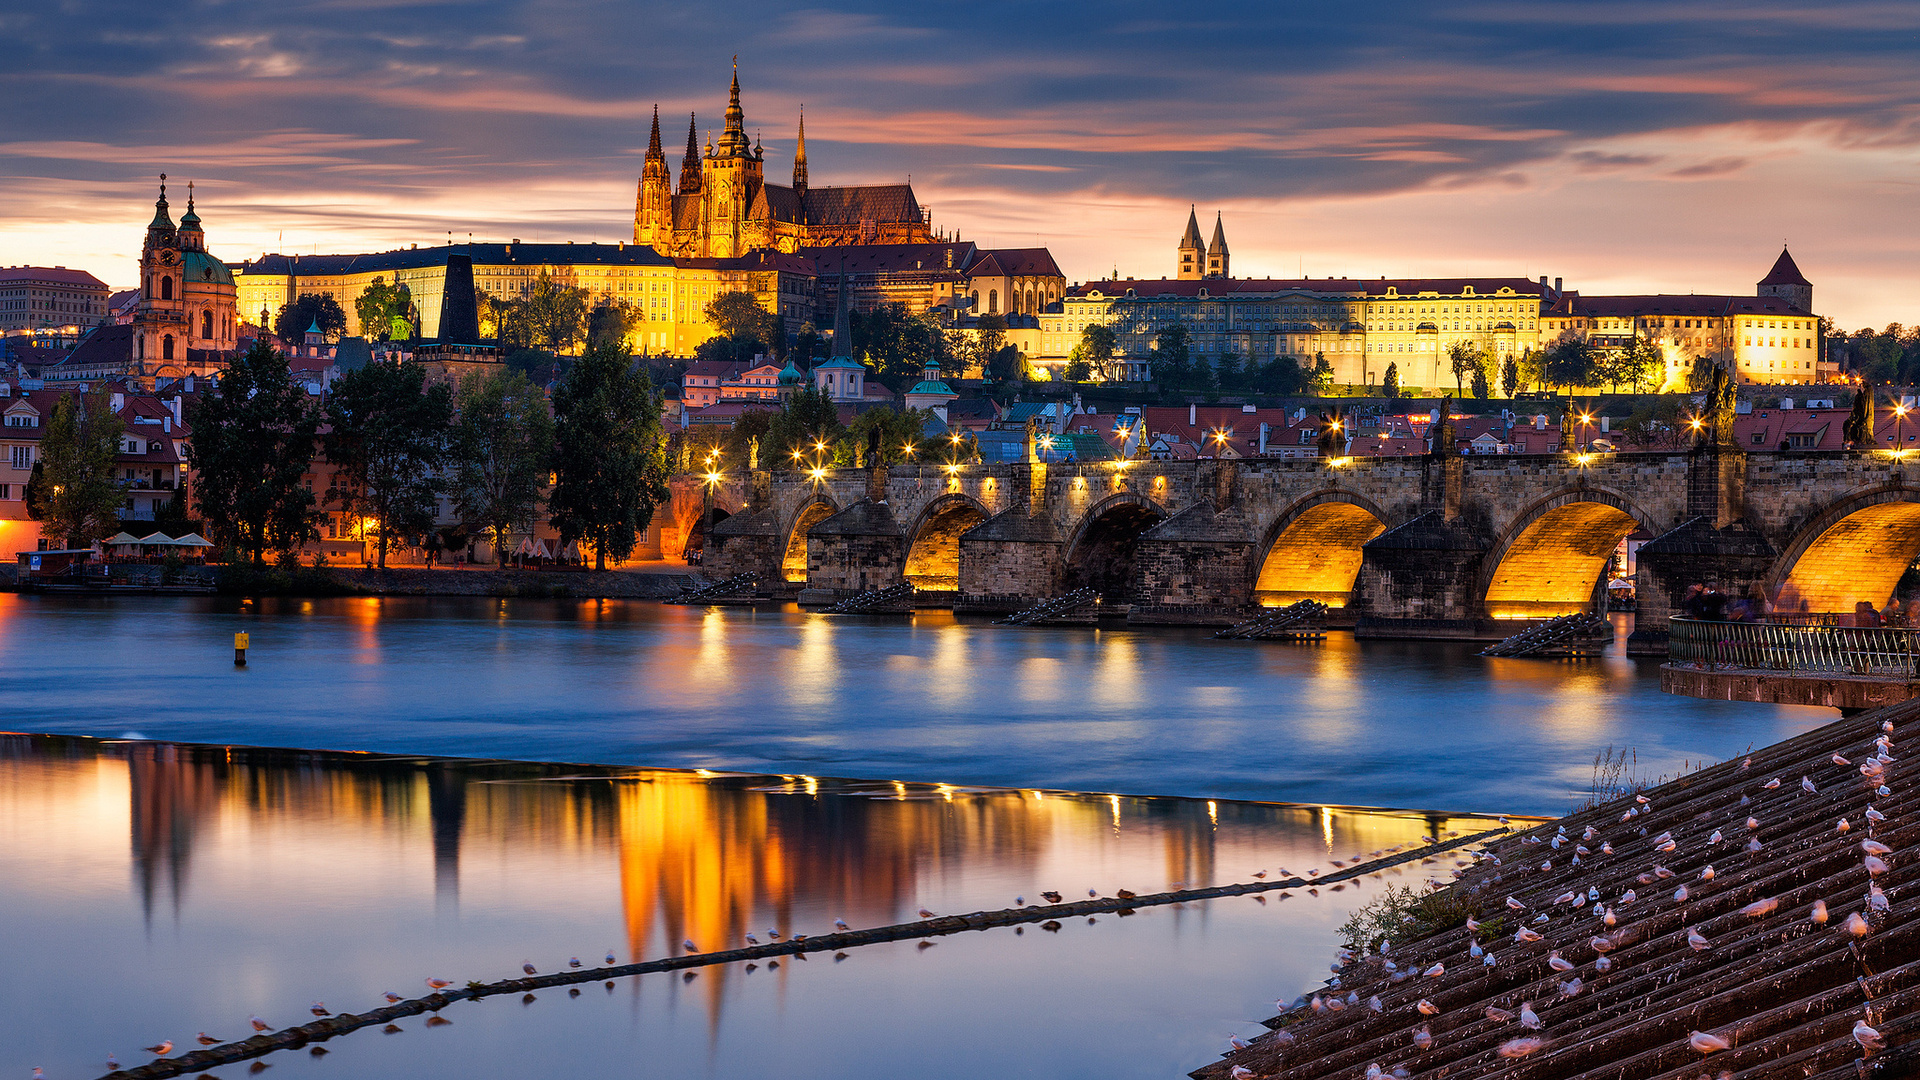 Prague Castle Backgrounds, Compatible - PC, Mobile, Gadgets| 1920x1080 px